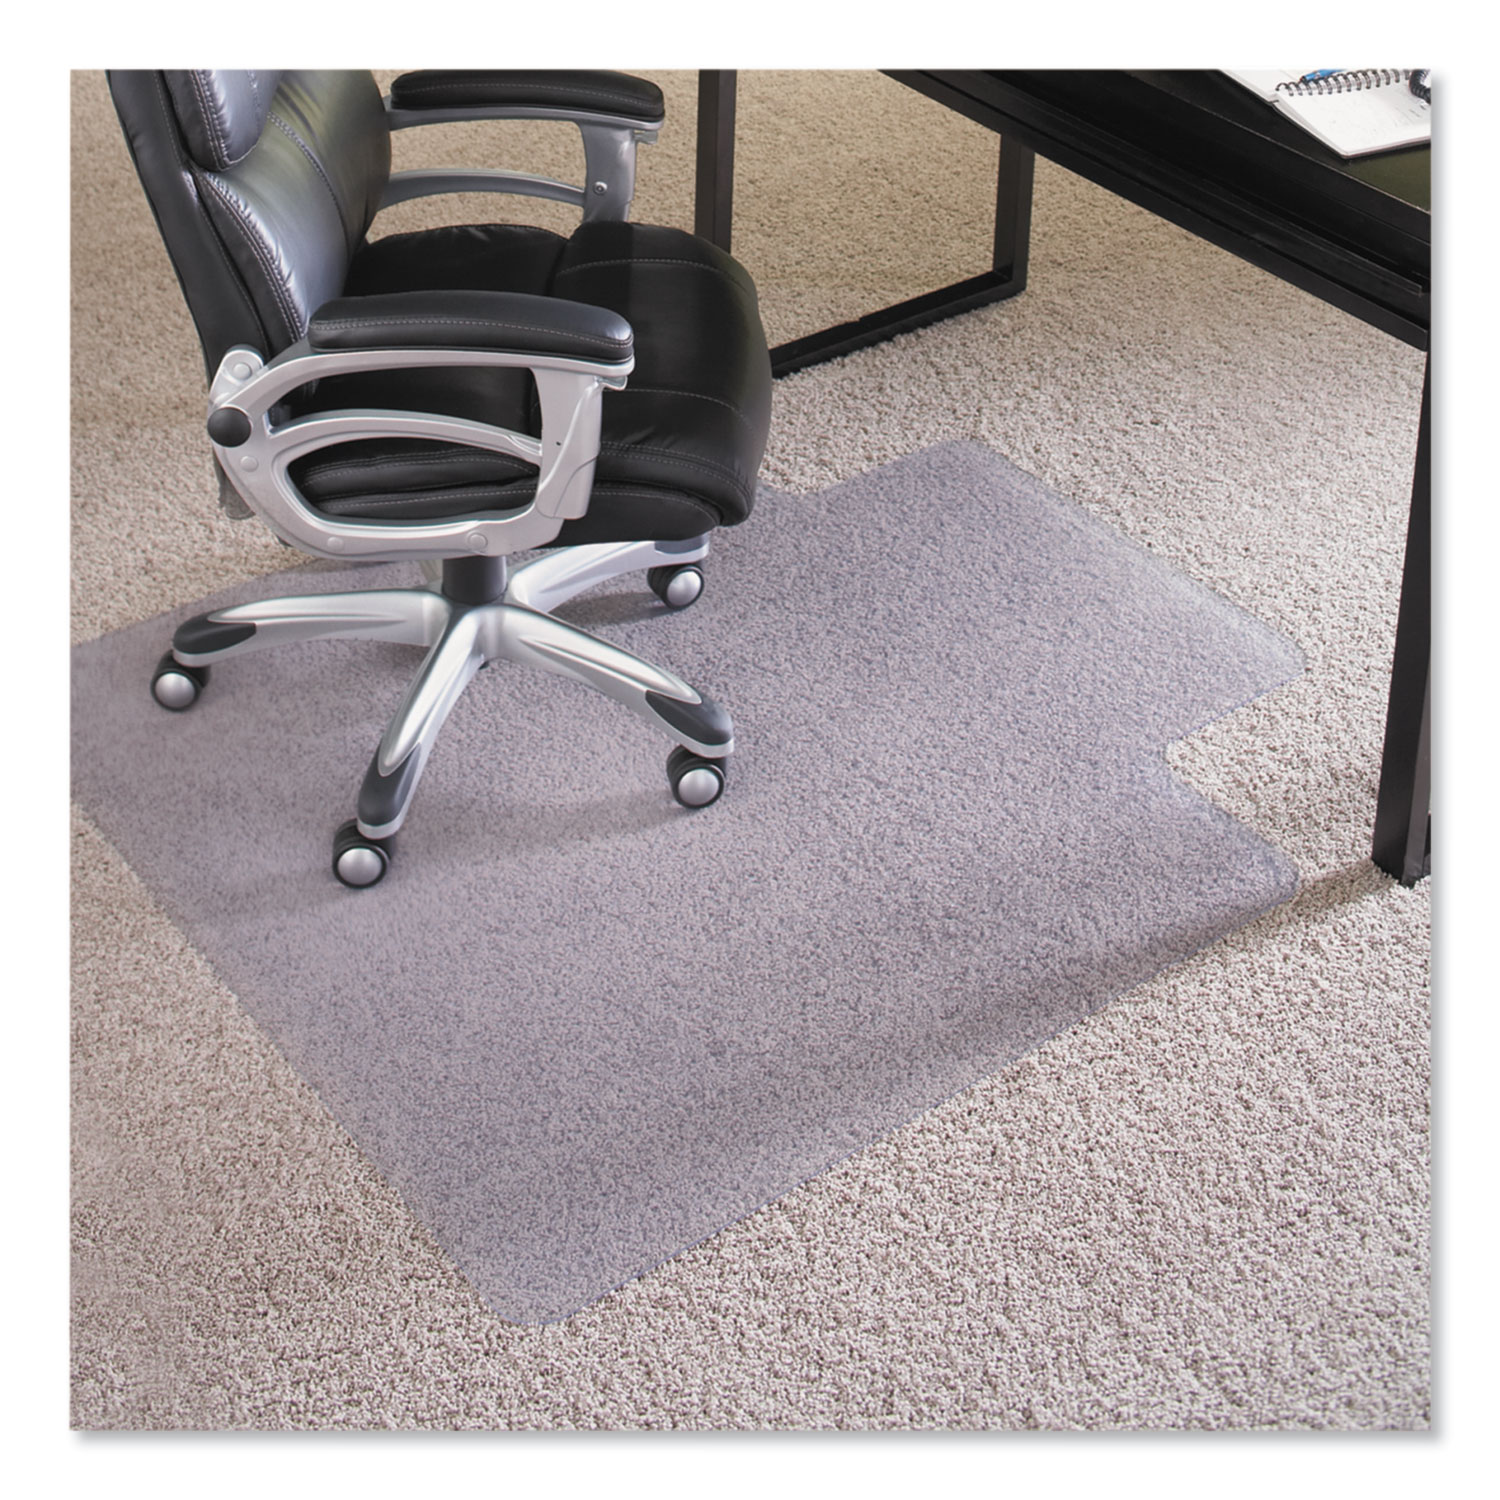  ES Robbins 124154 Performance Series AnchorBar Chair Mat for Carpet up to 1, 45 x 53, Clear (ESR124154) 